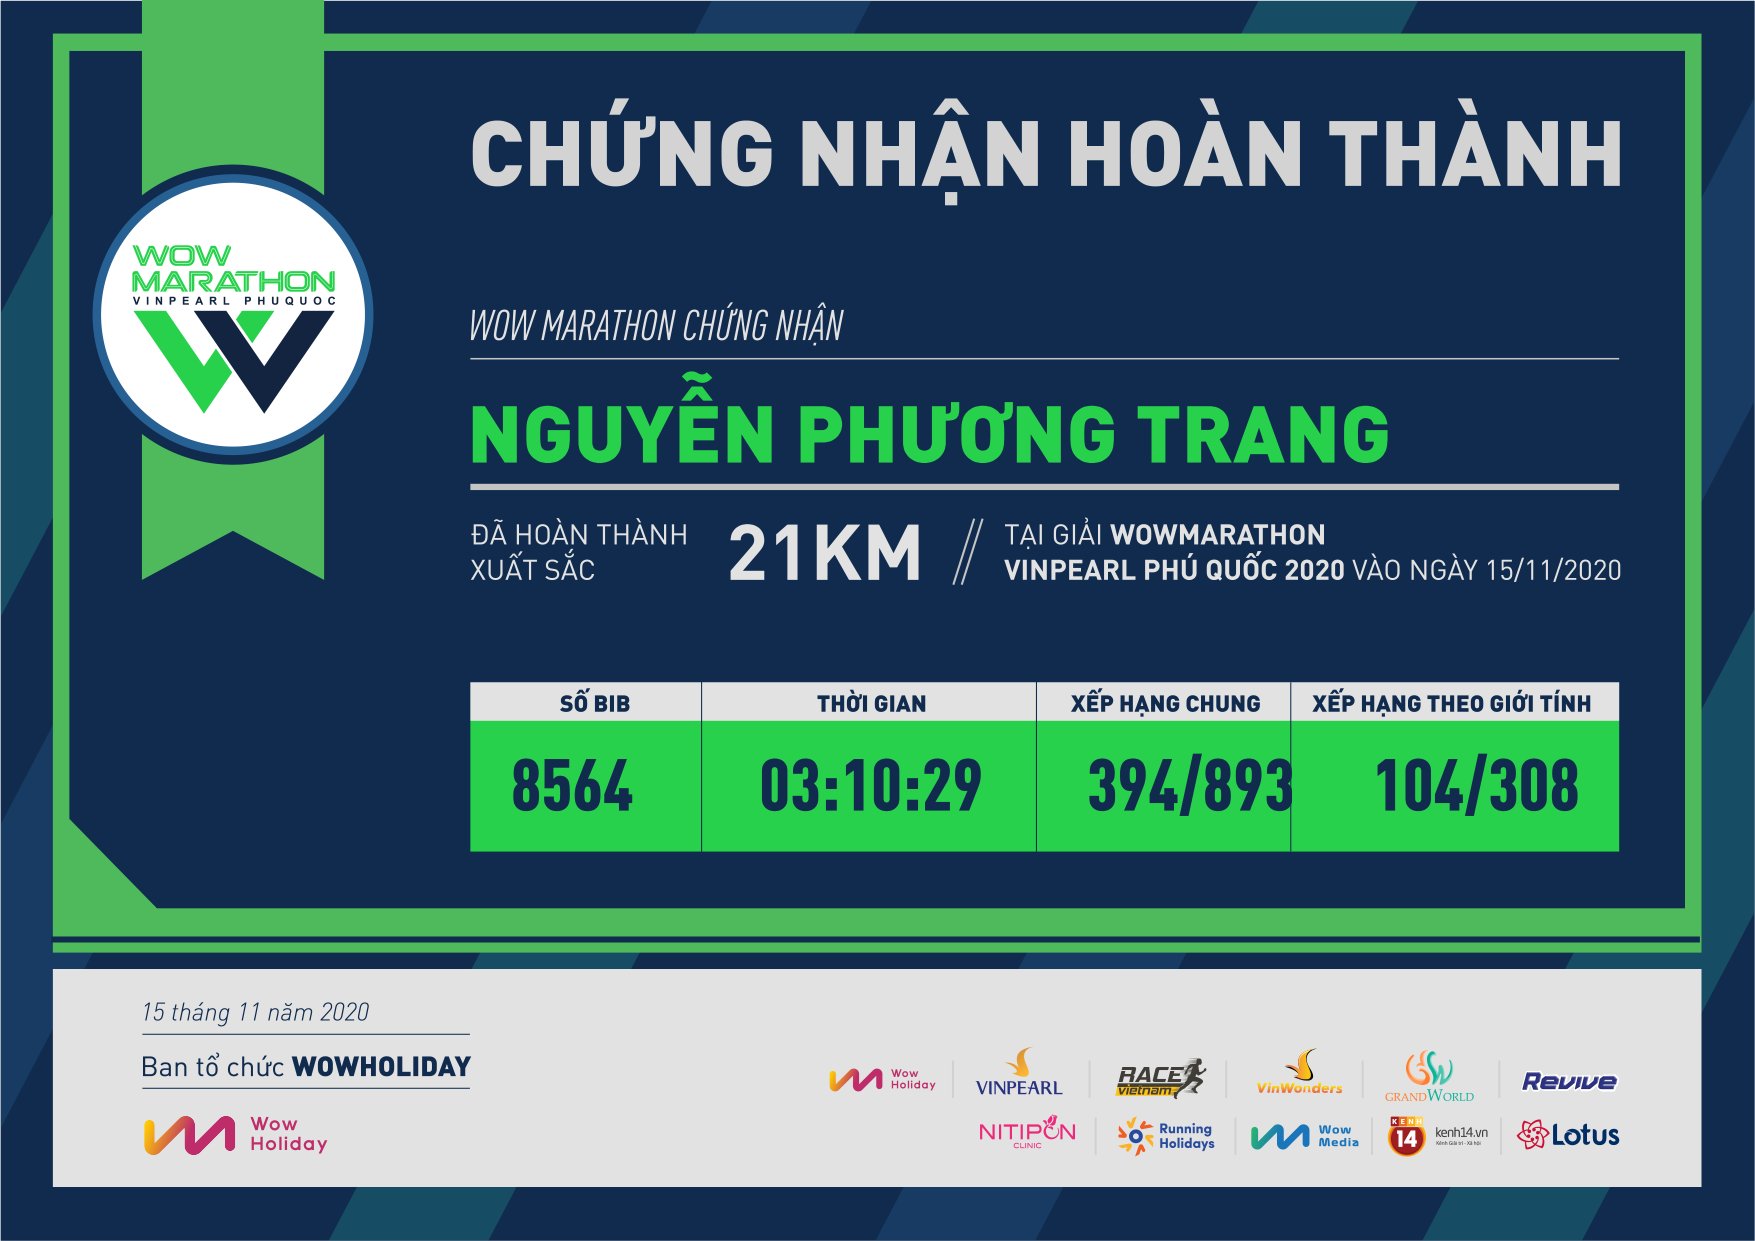 8564 - Nguyễn Phương Trang